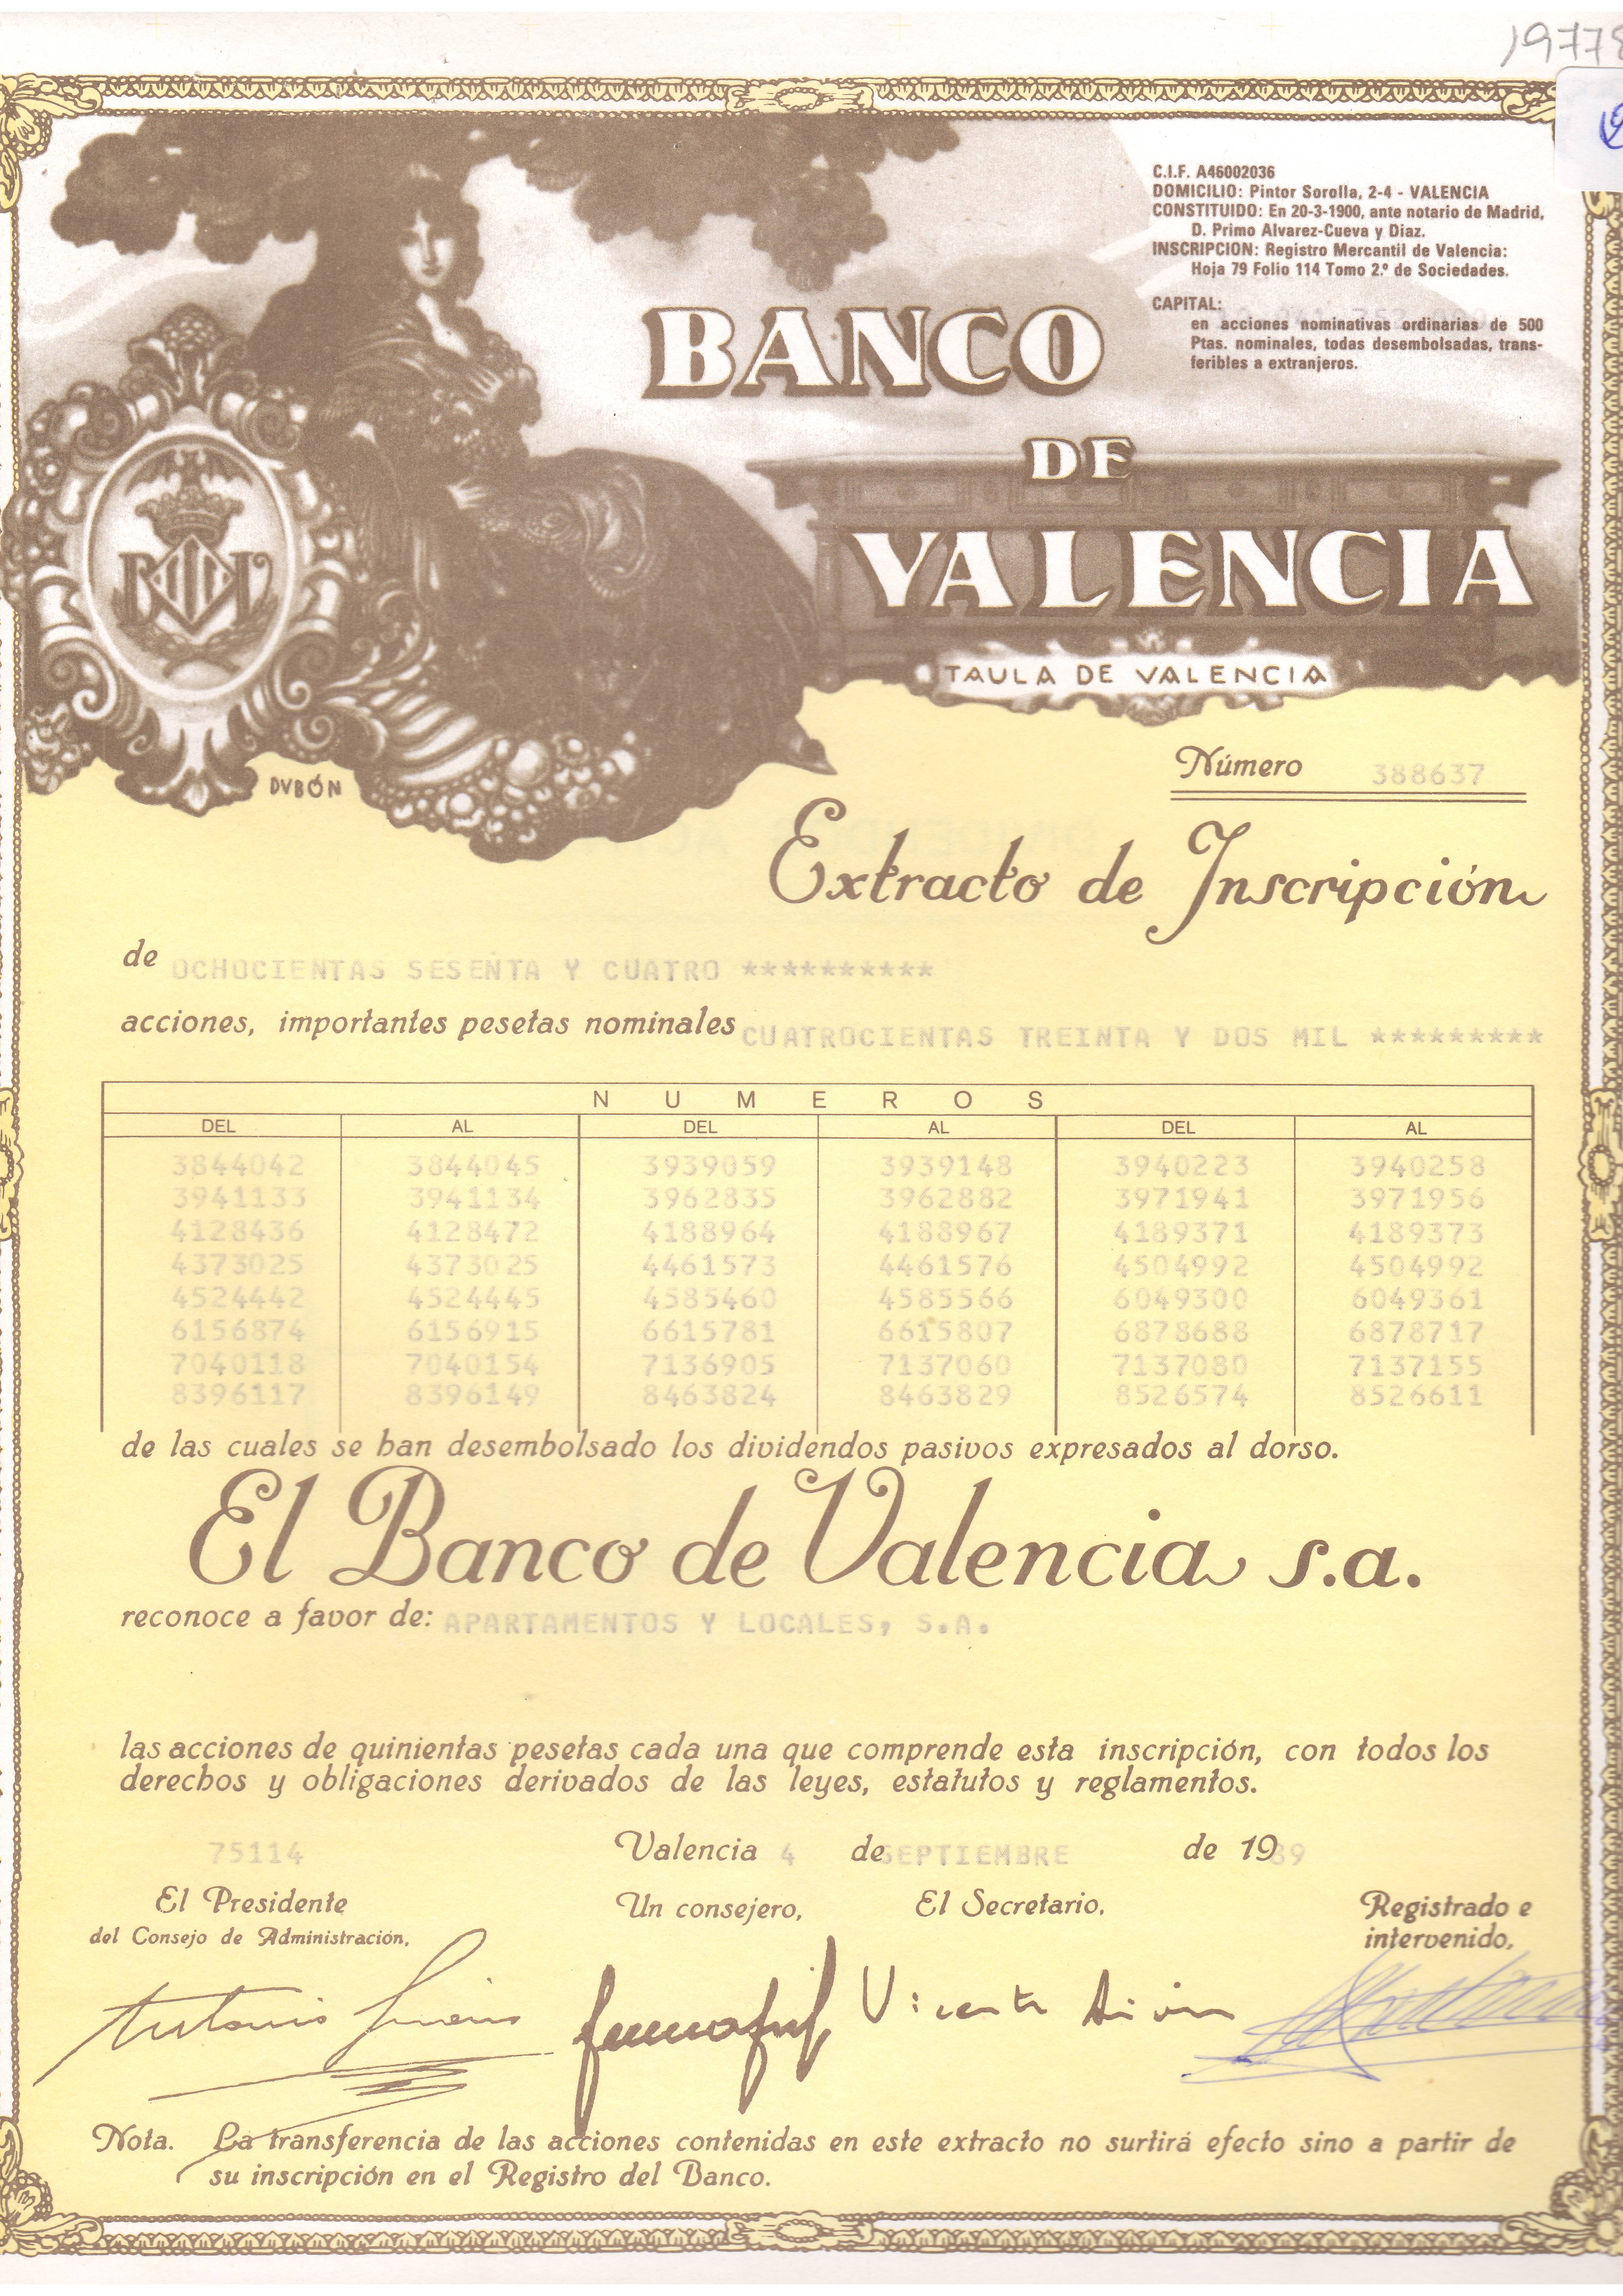 Banco de Valencia: extracto de inscripción de acciones nominativas